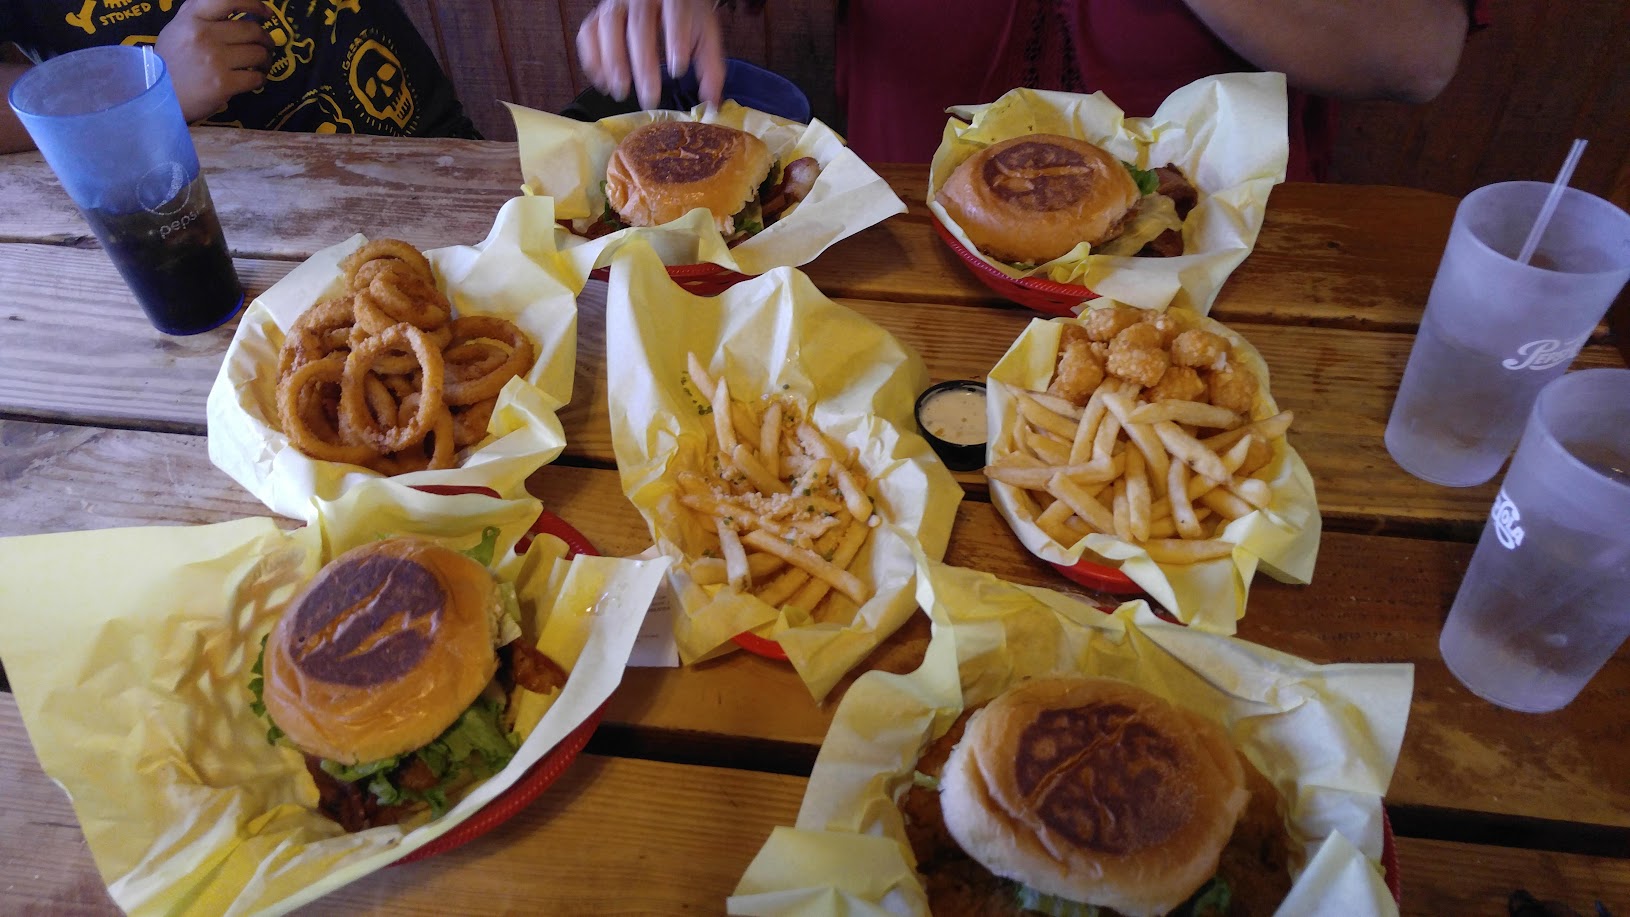 Chunky's Burgers